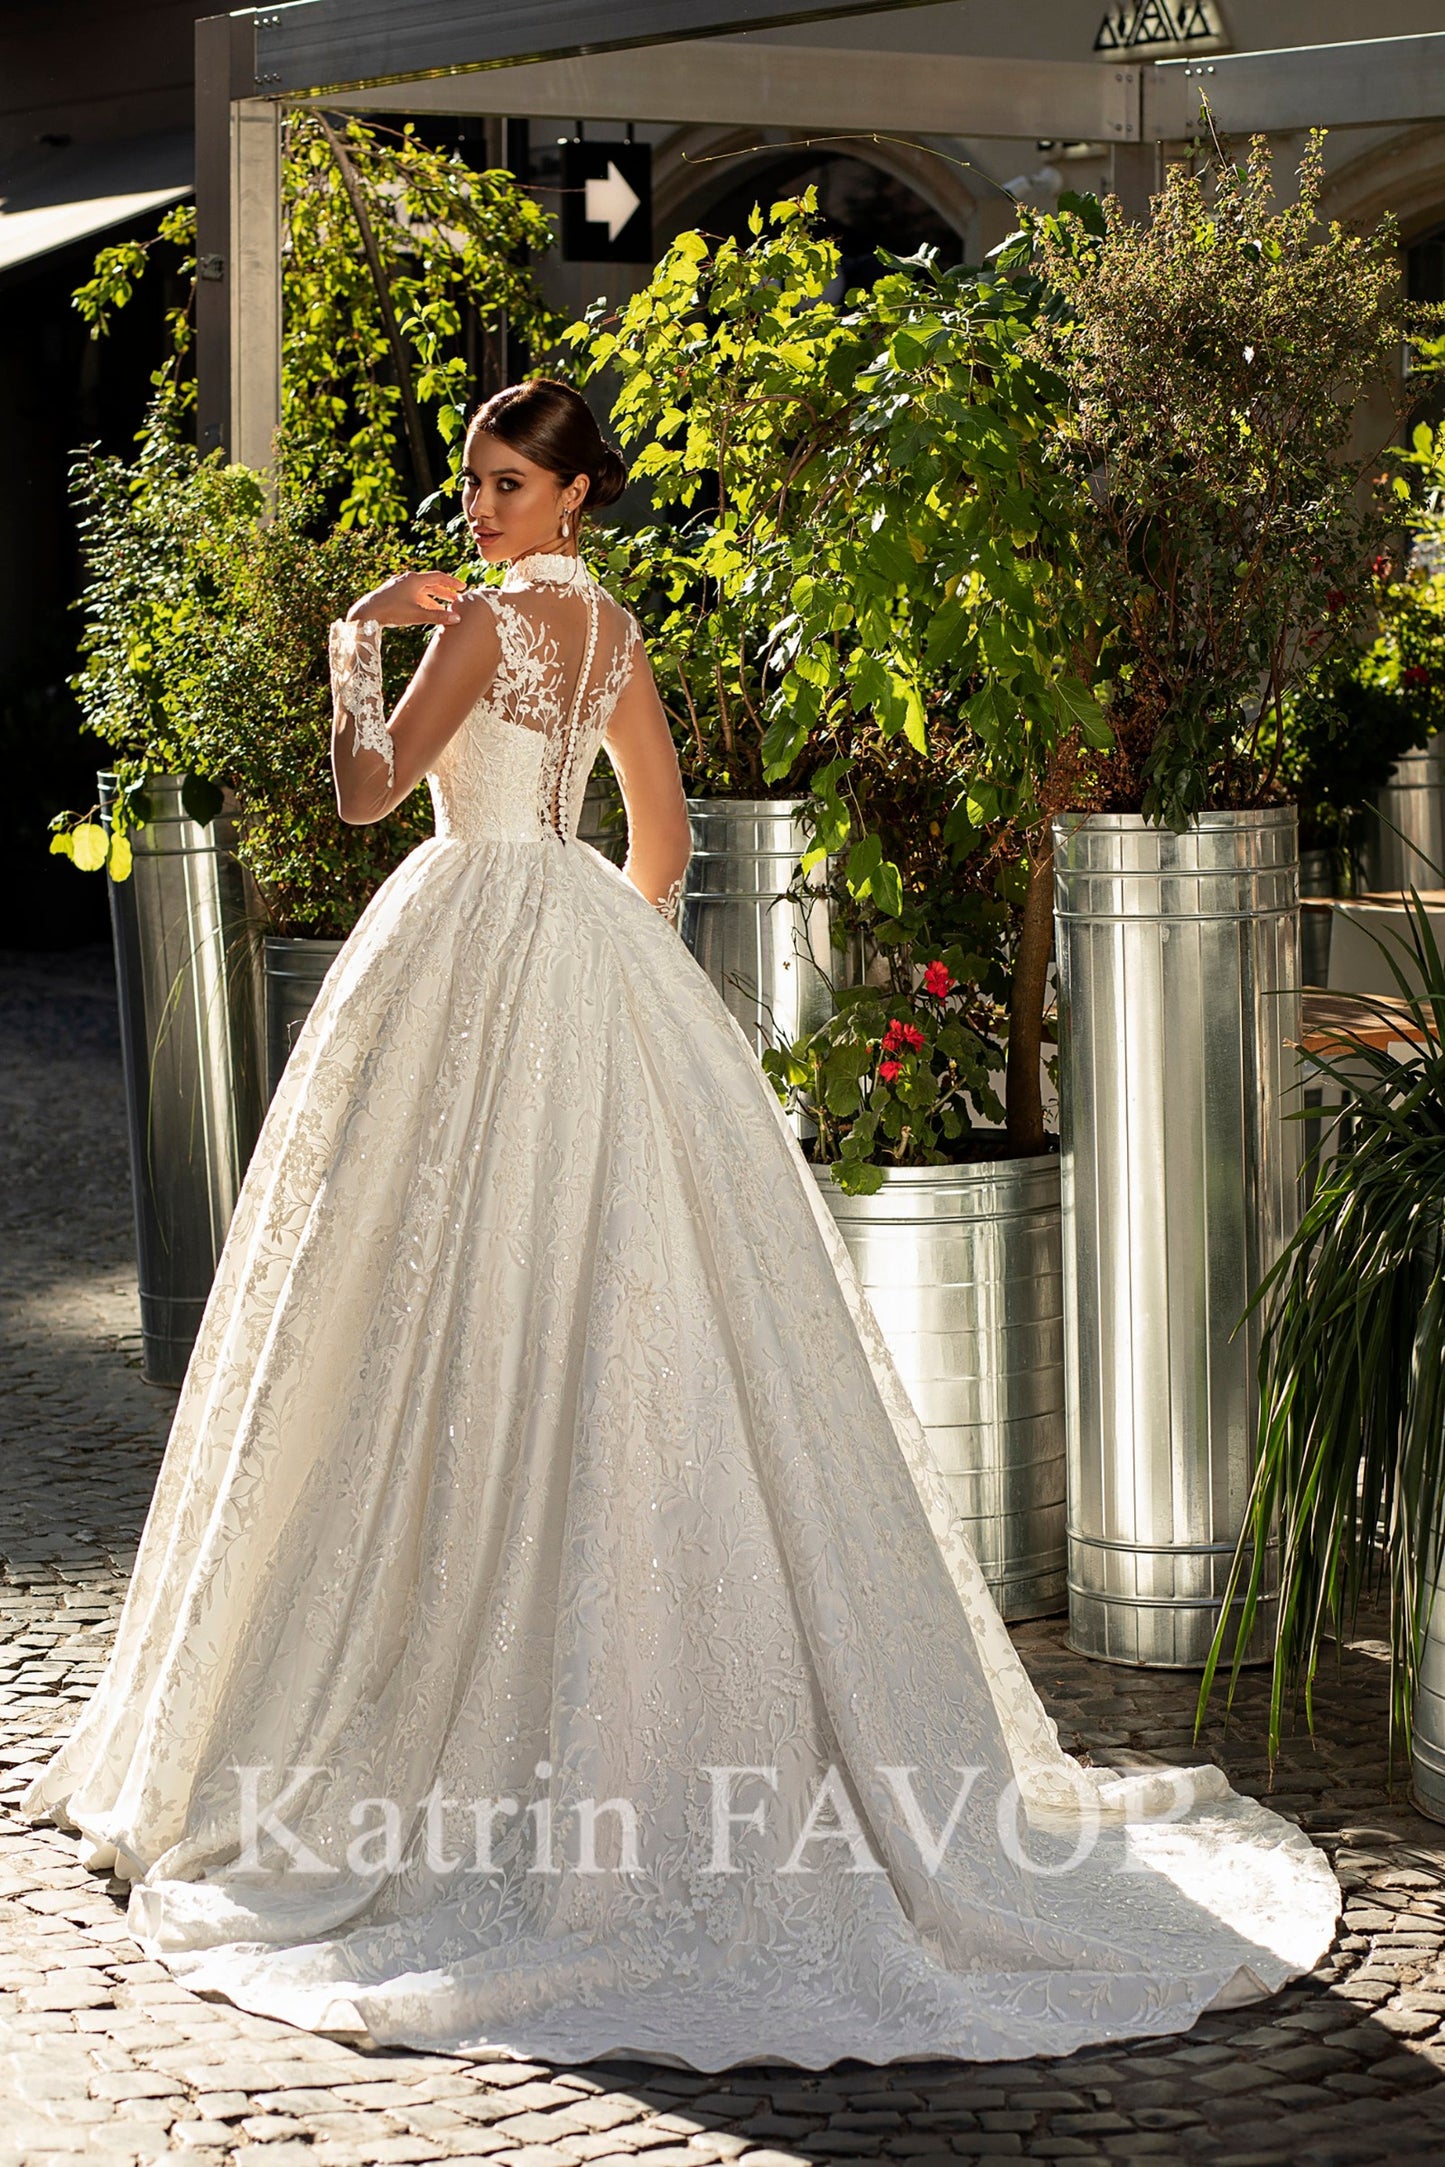 KatrinFAVORboutique-Lace ballgown princess wedding dress